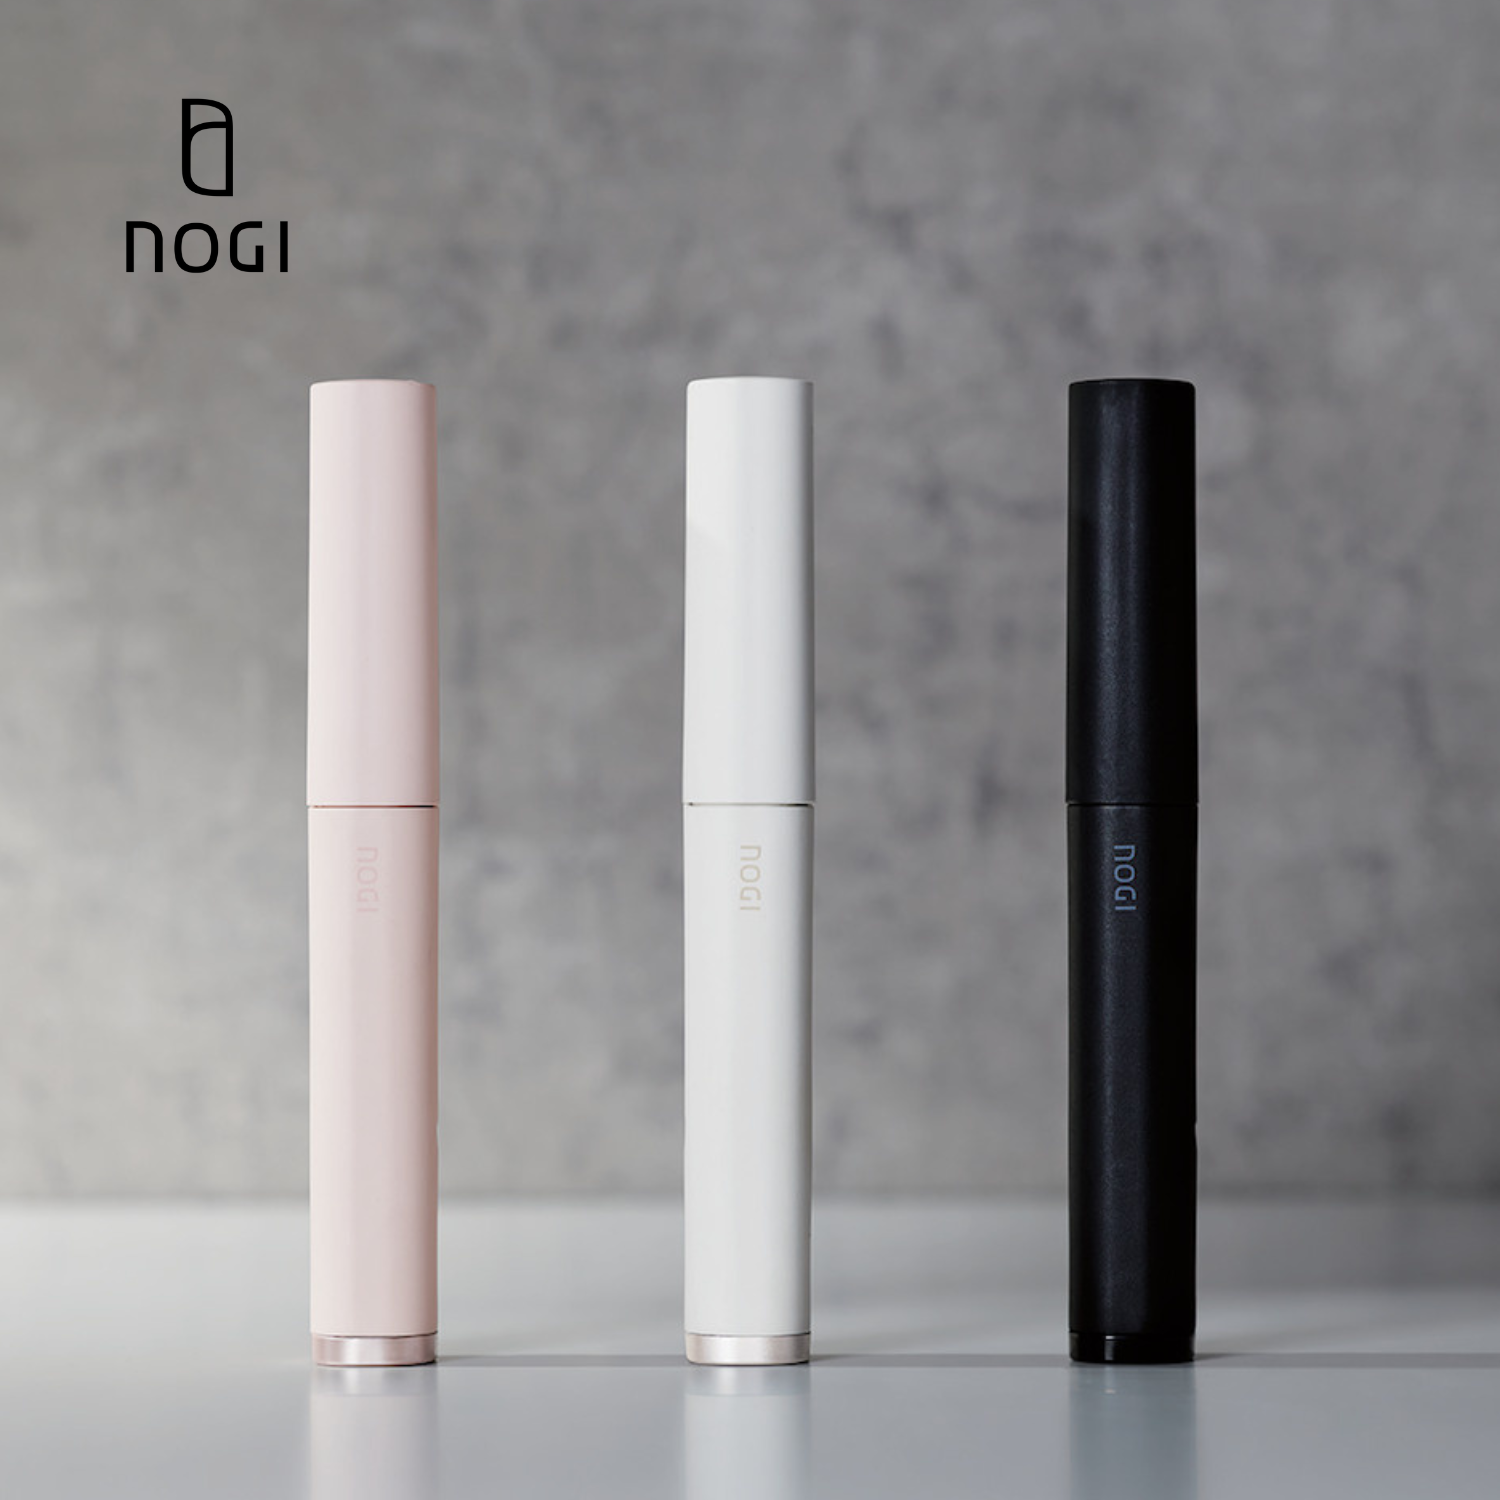 ELECOM Breaks Into Beauty Industry With Revolutionary NOGI USB Mini Hair Iron